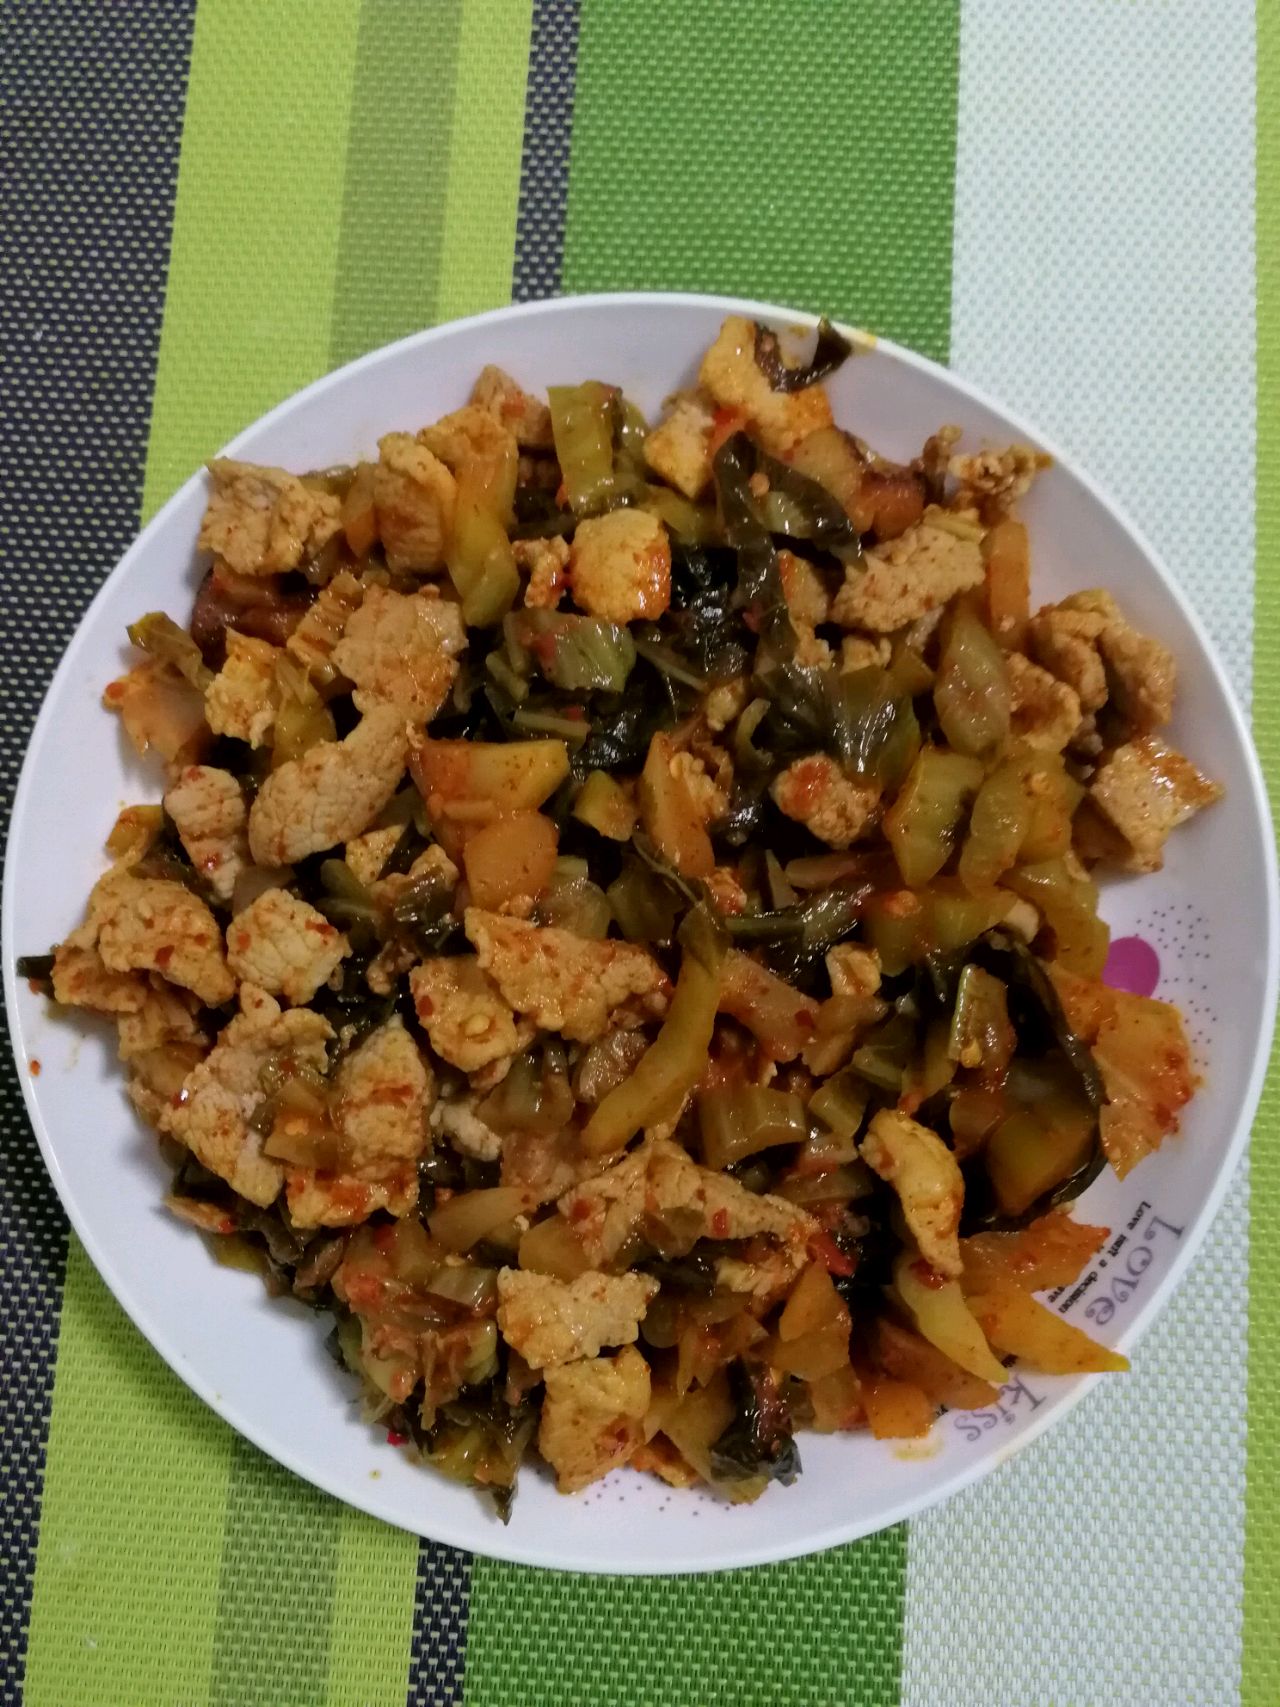 腌菜炒肉(傣语:柏尕梭炒讷)